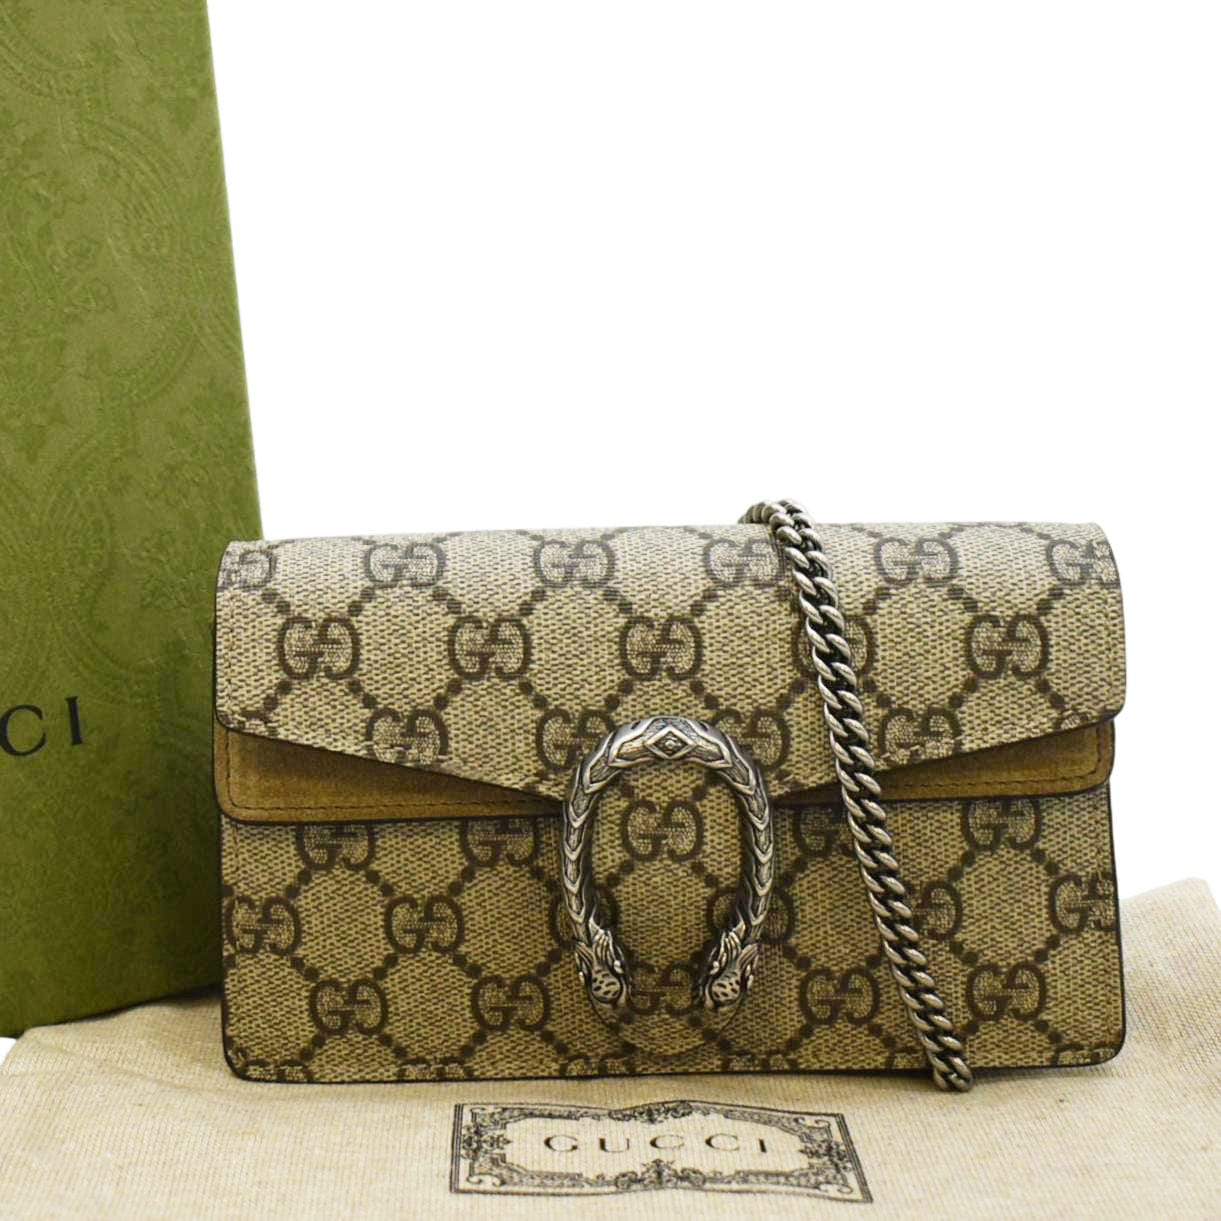 Gucci GG Supreme Canvas Mini-Bag